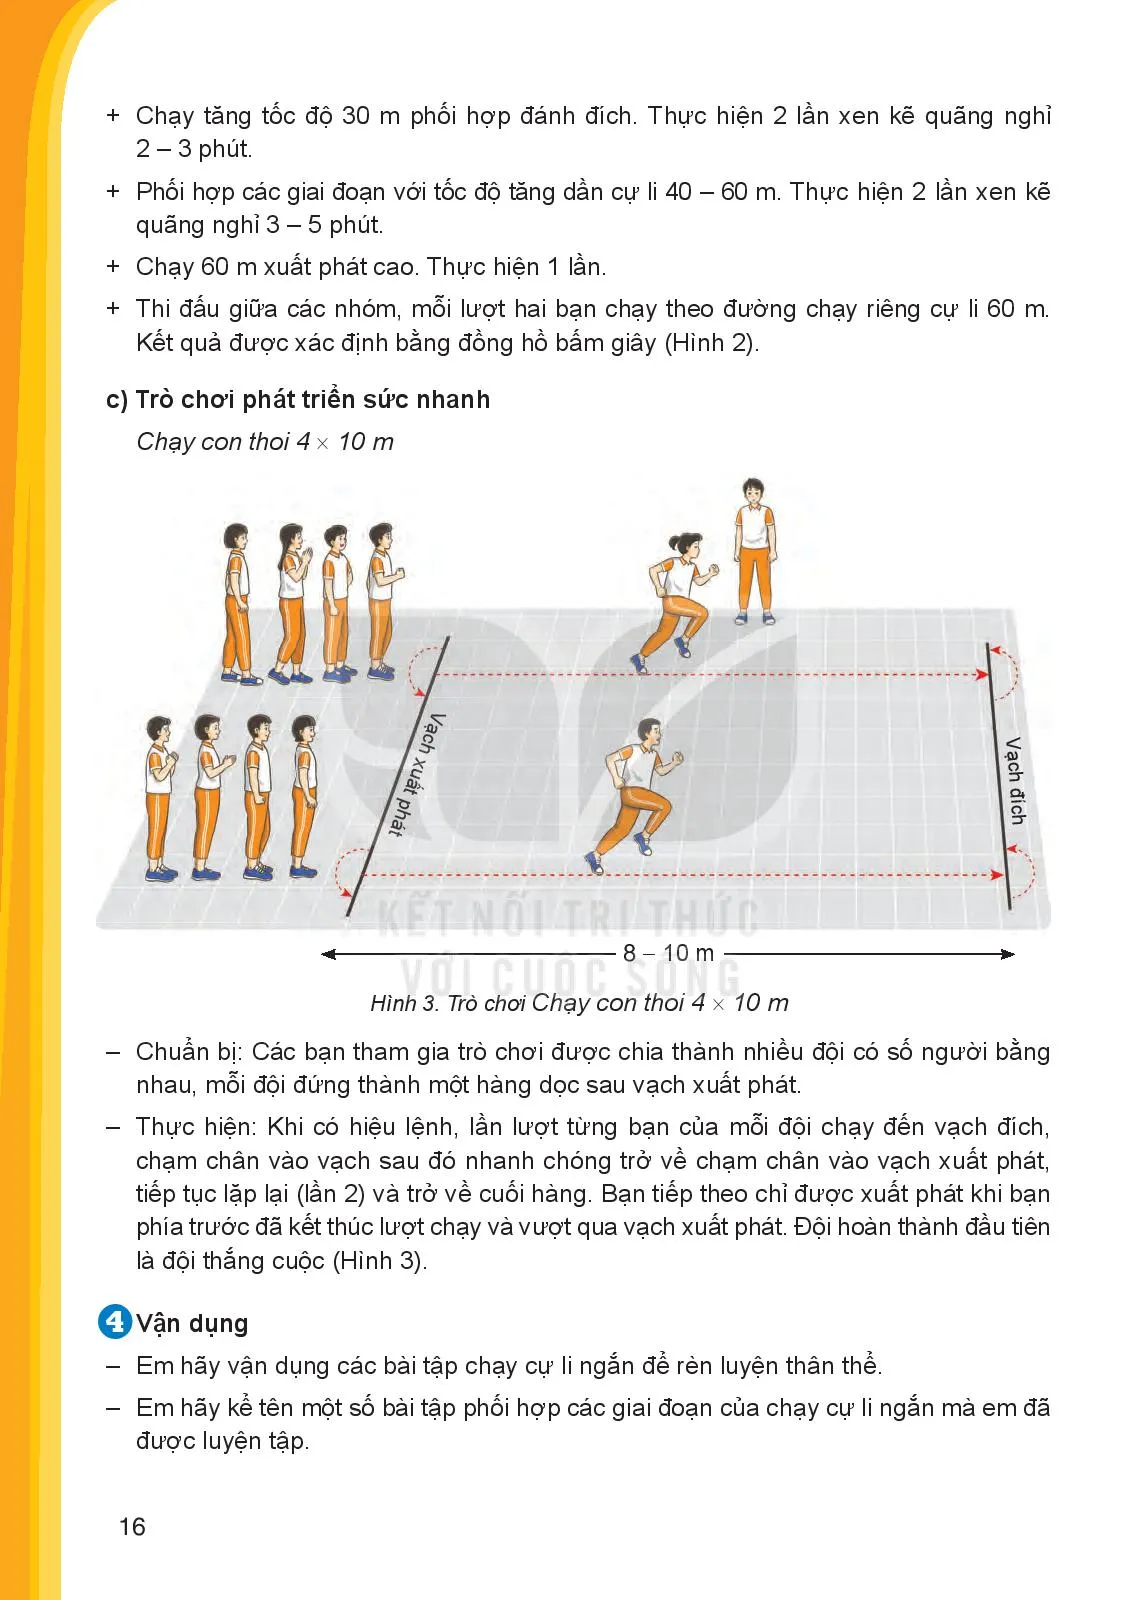 Bài 3. Phối hợp các giai đoạn chạy cự li ngan (60 m)